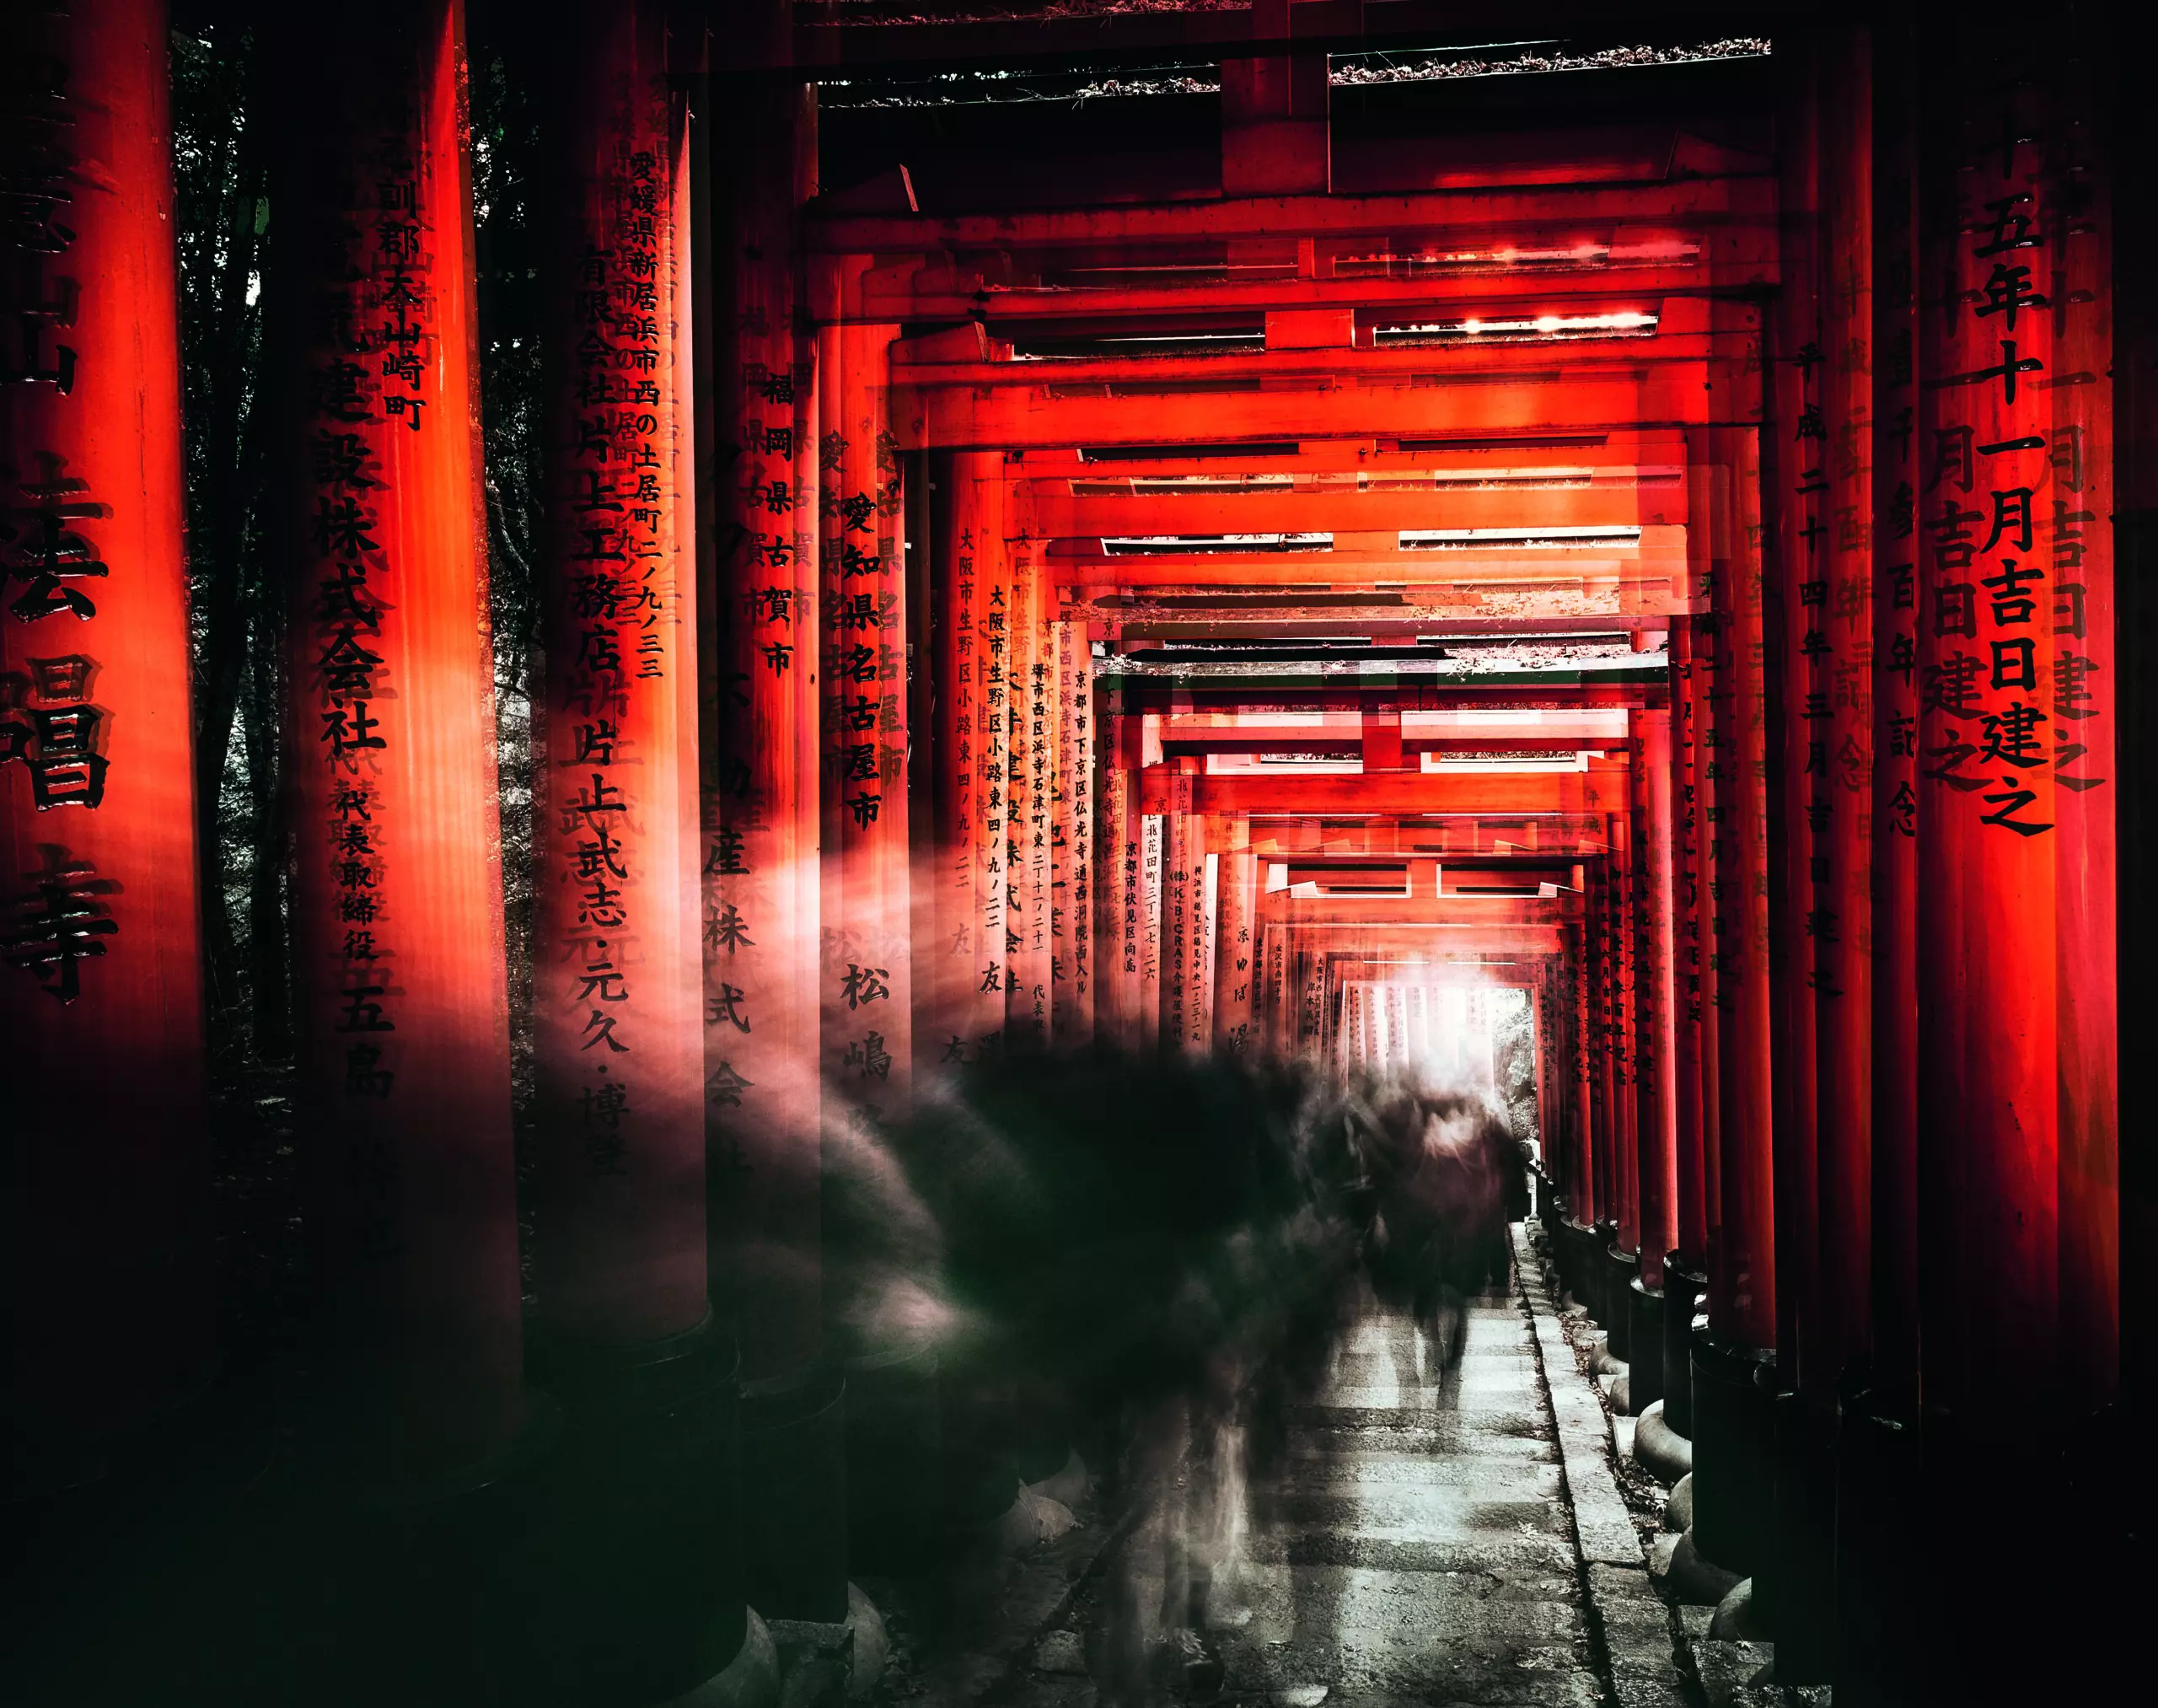 Wandbild (5087) Fushimi Inari Shrine by Chiriaco präsentiert: Aktion-Bewegung,Menschen,Kreatives,Details und Strukturen,Menschengruppen,Sonstiges Kreatives,Architekturdetails